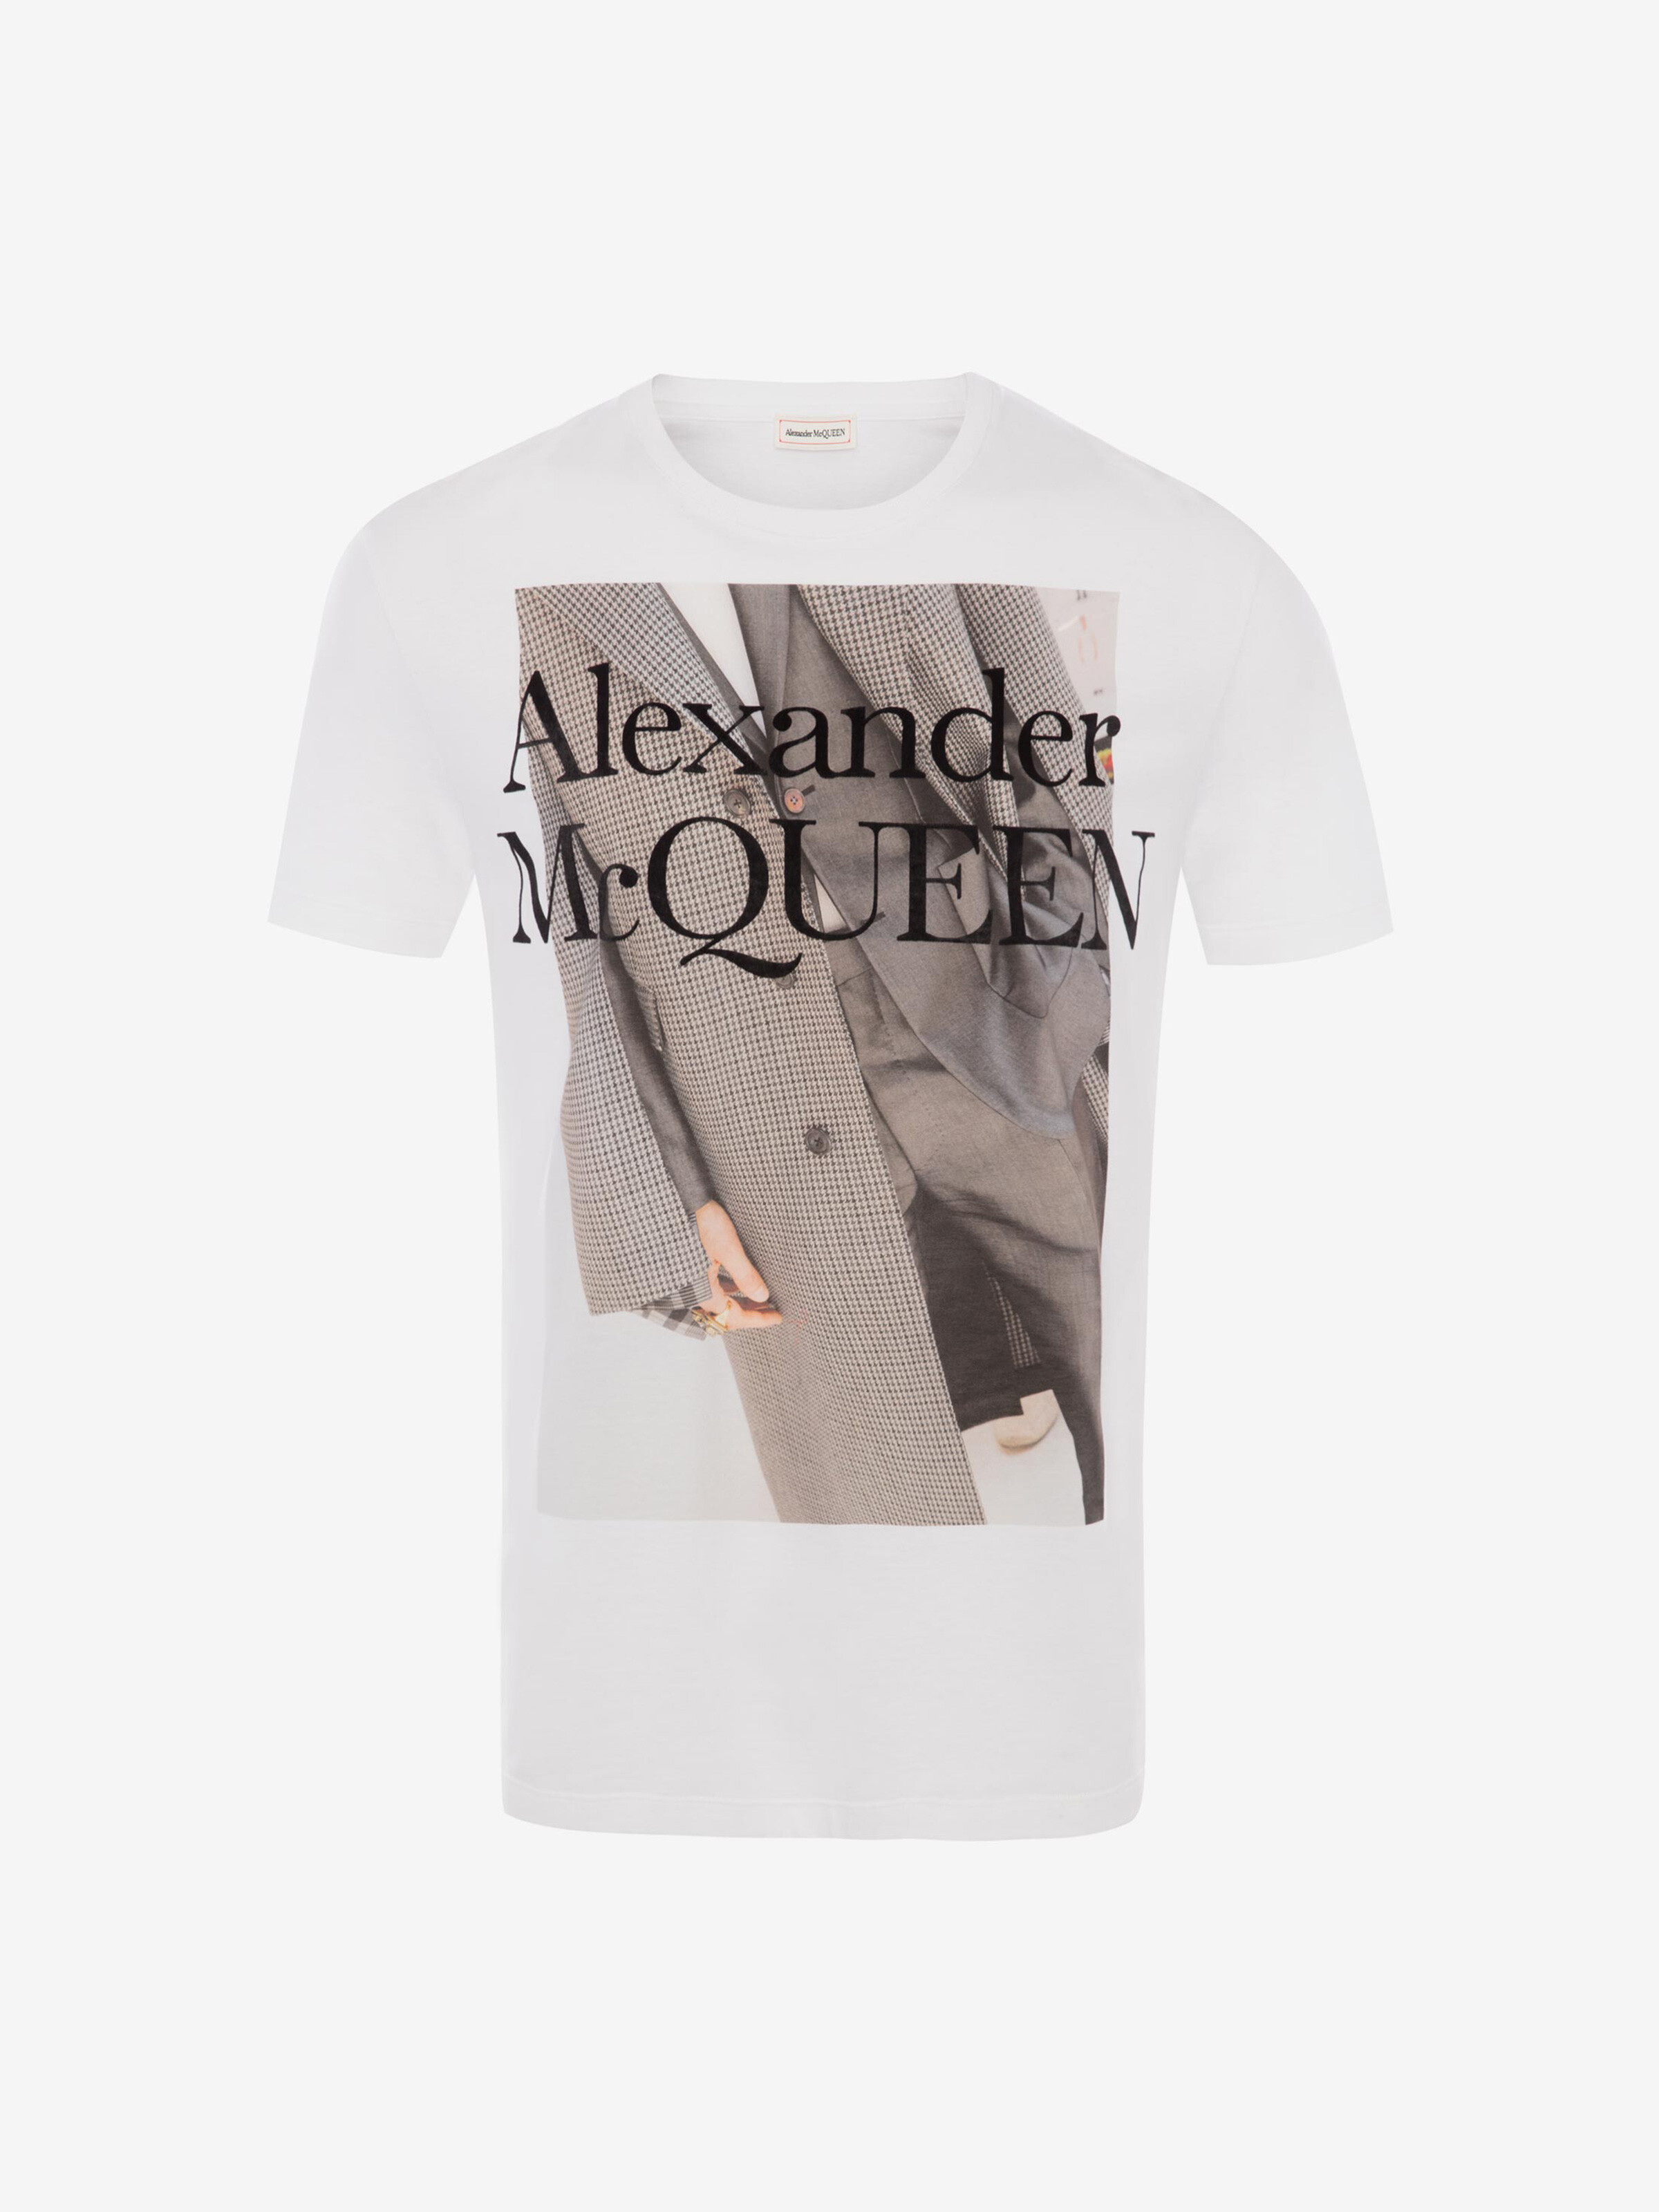 alexander mcqueen t shirt white